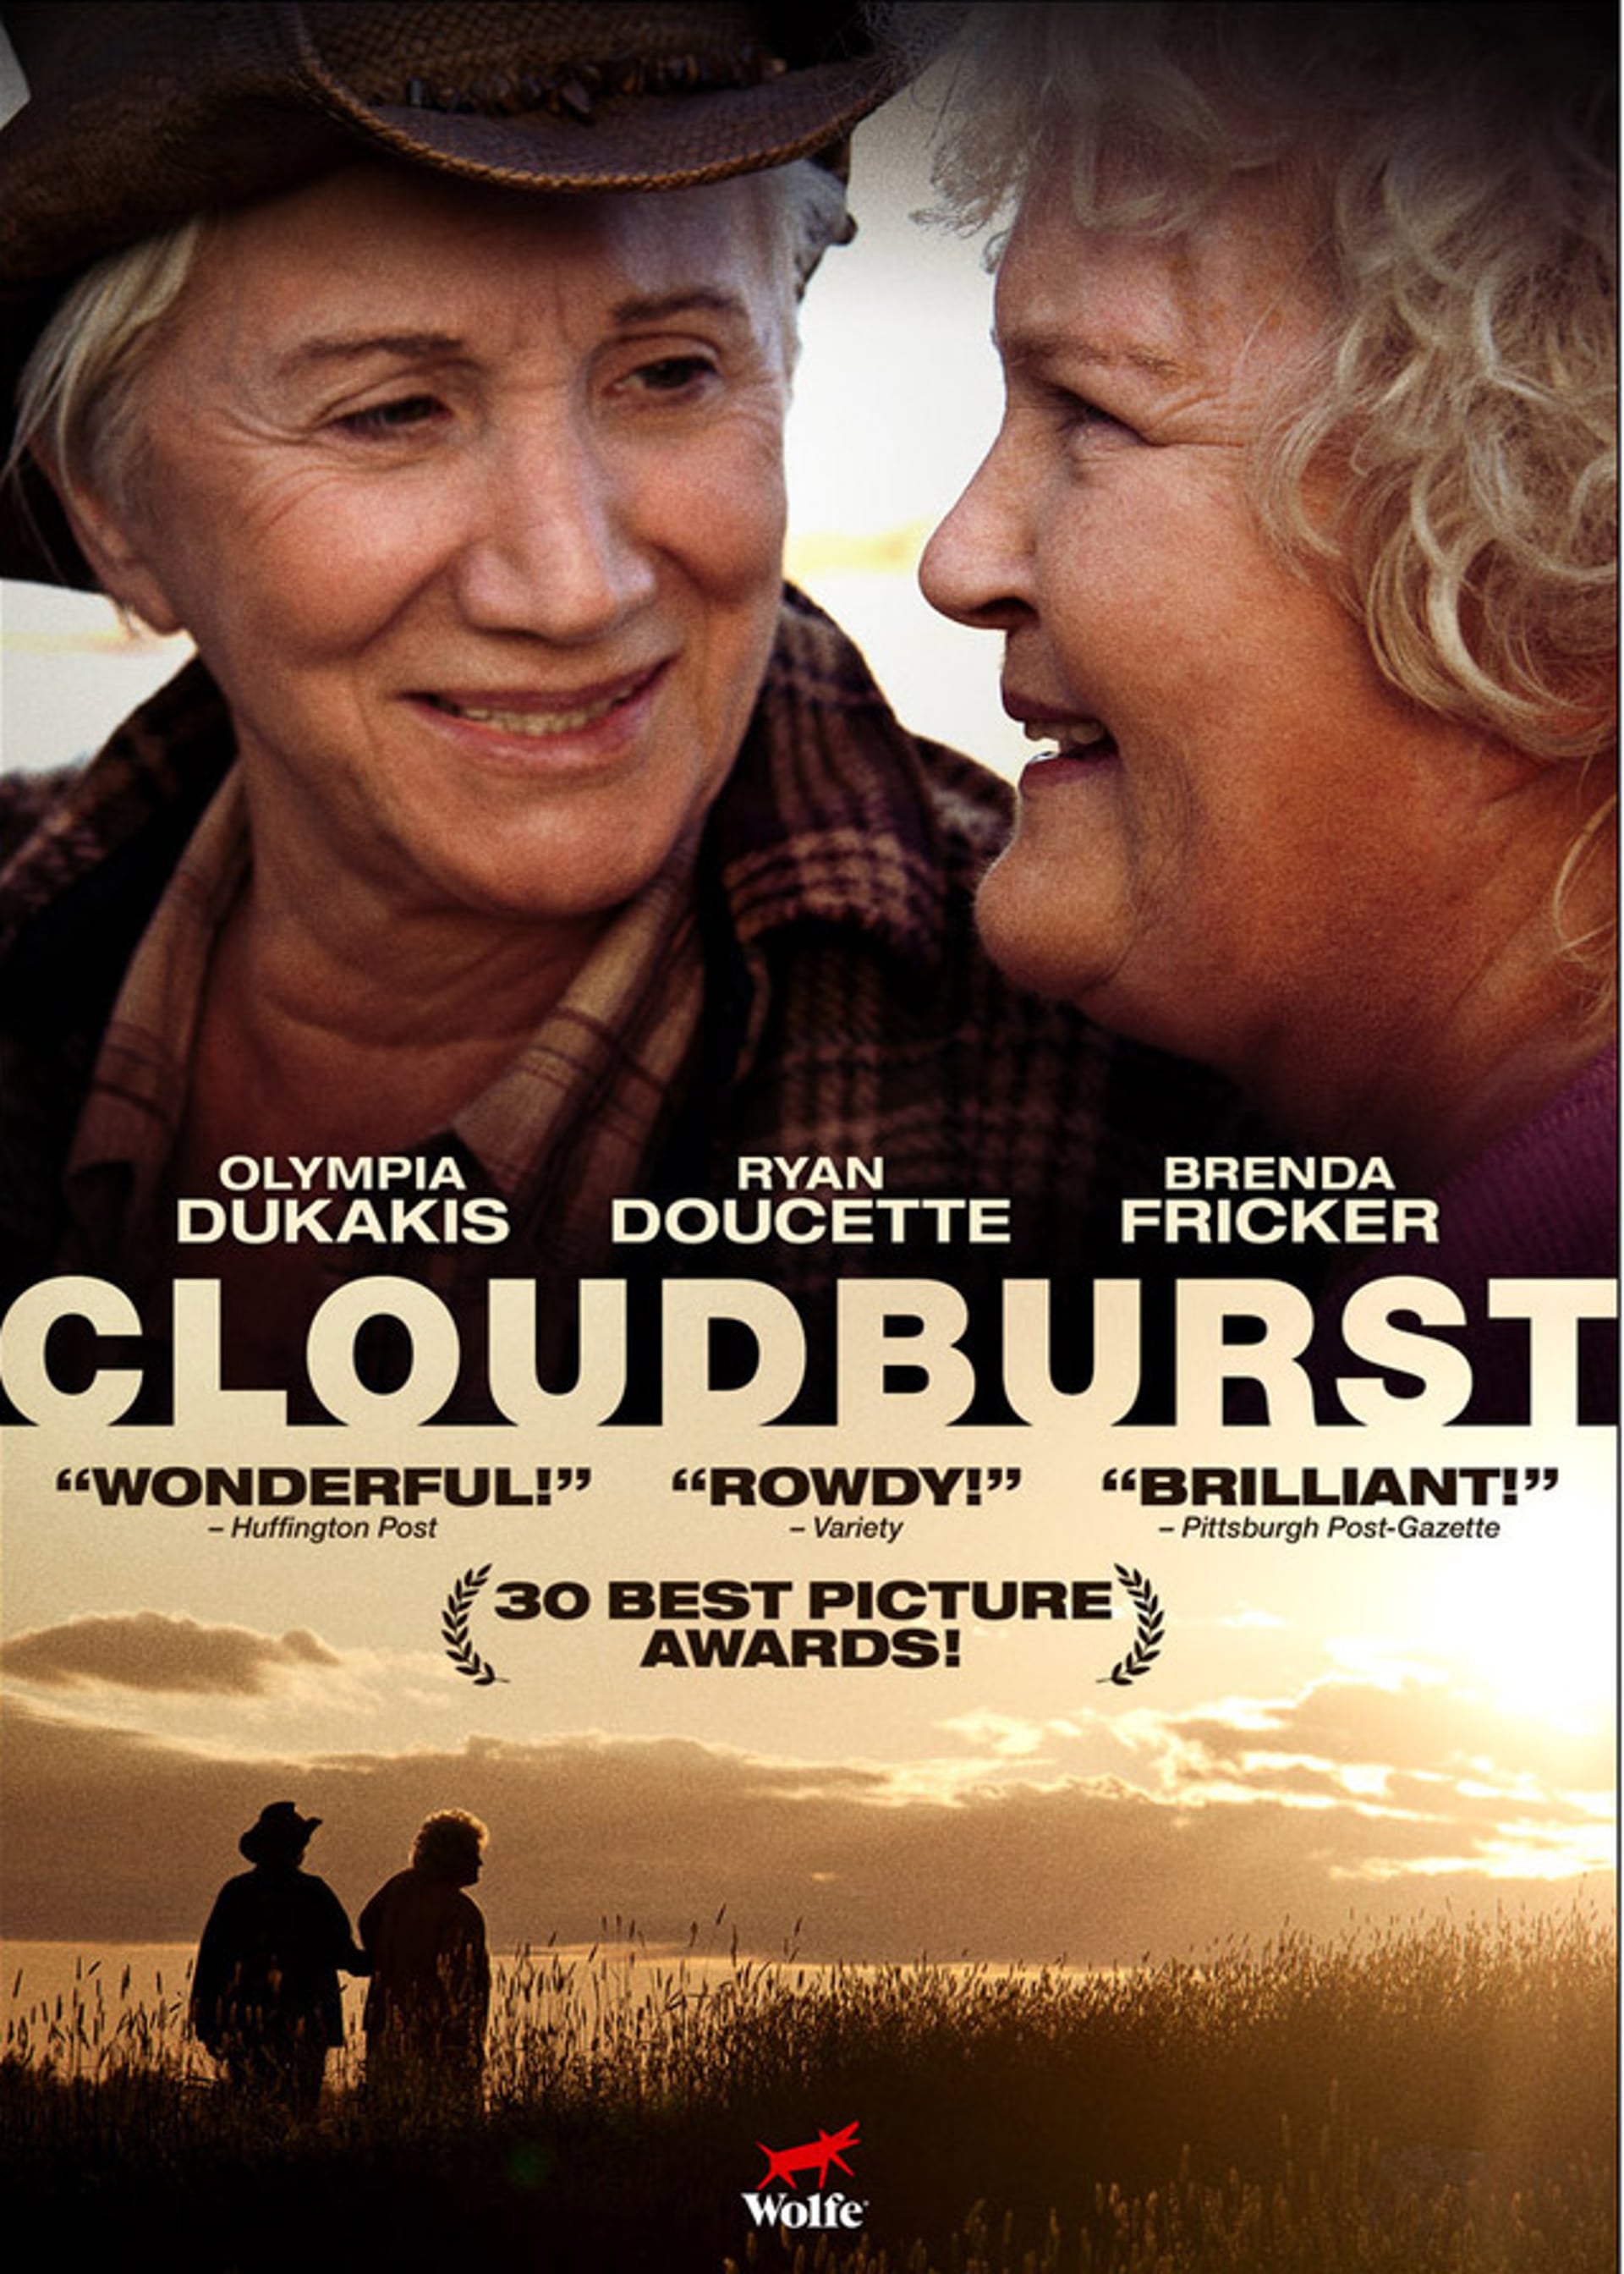 cloudburst movie